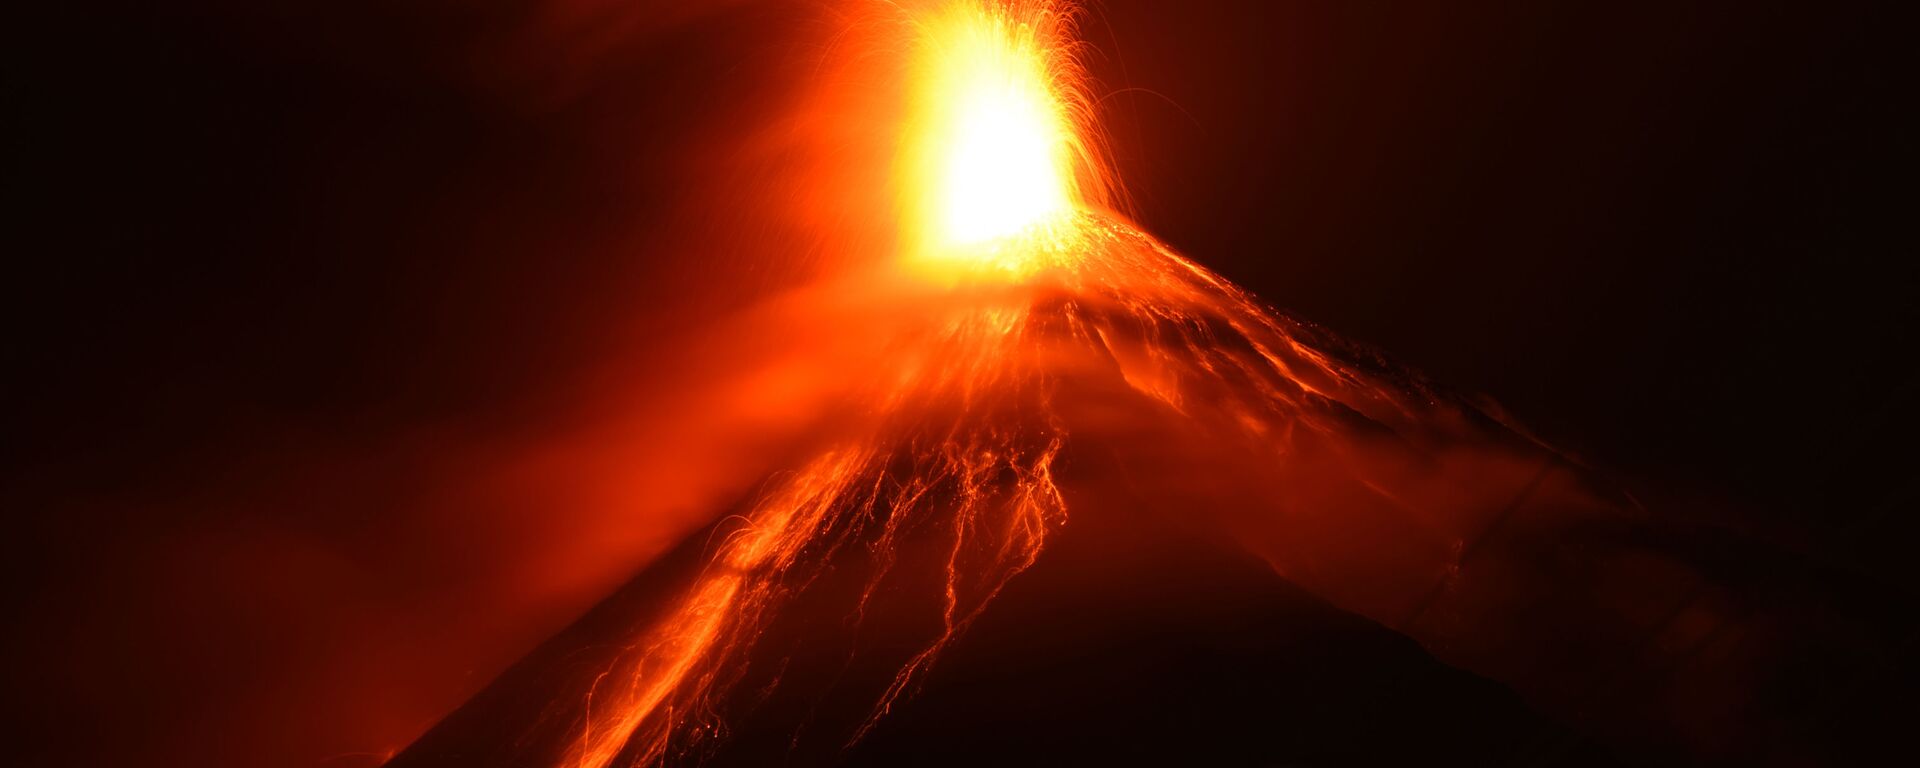 Espeluznantes imágenes de la erupción del volcán de Fuego en Guatemala - Sputnik Mundo, 1920, 21.11.2018